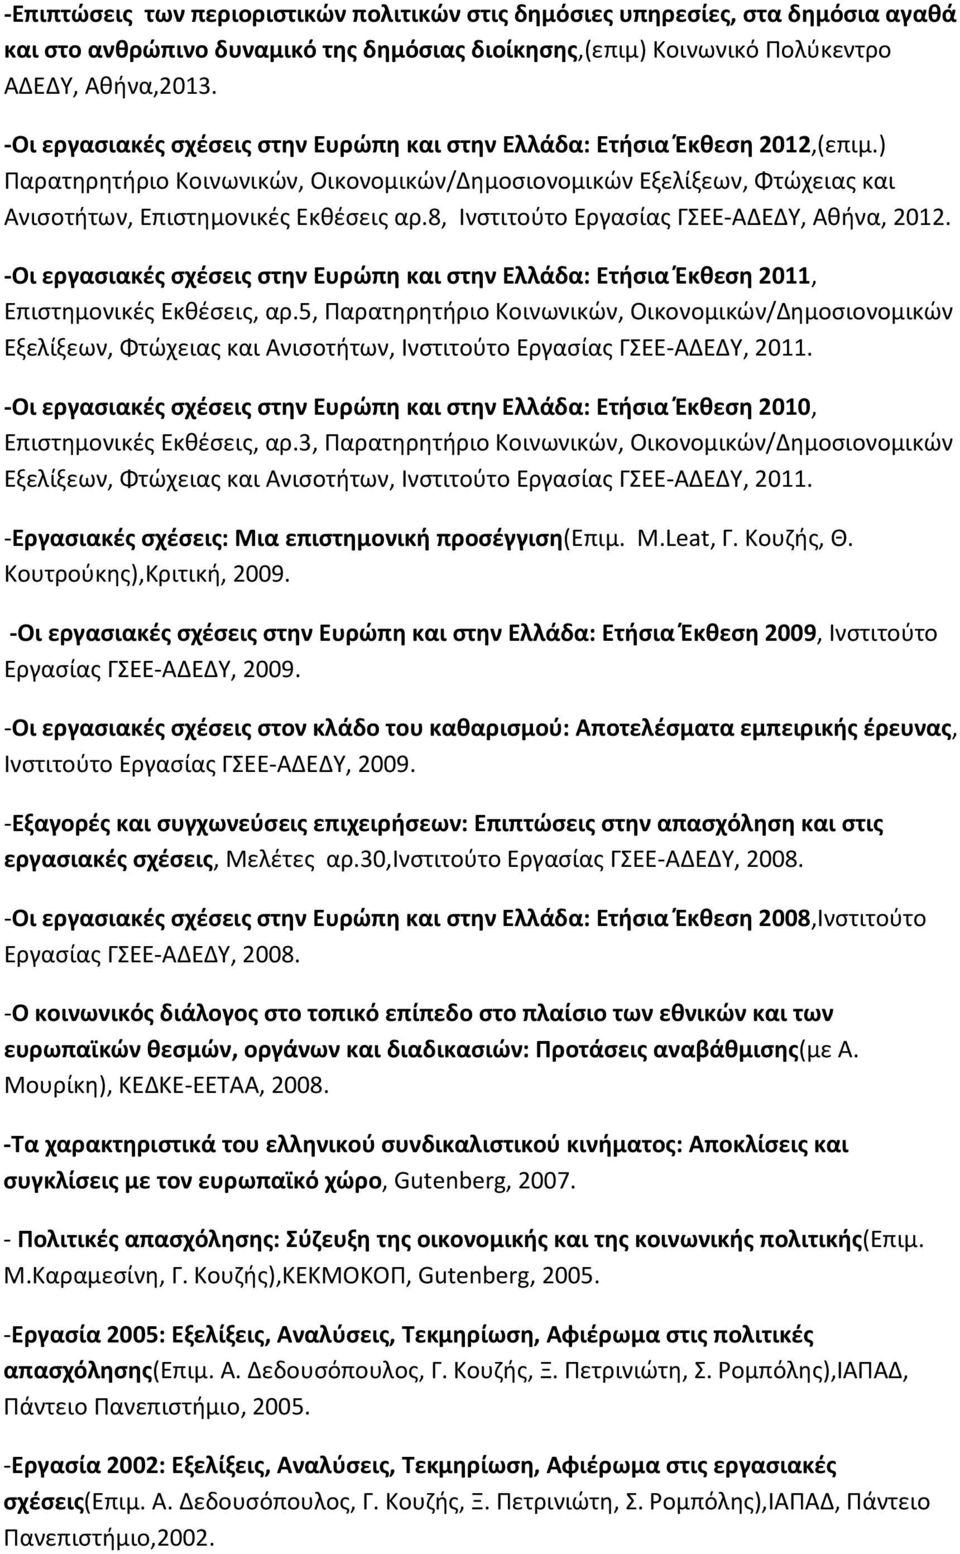 8, Ινστιτούτο Εργασίας ΓΣΕΕ-ΑΔΕΔΥ, Αθήνα, 2012. -Οι εργασιακές σχέσεις στην Ευρώπη και στην Ελλάδα: Ετήσια Έκθεση 2011, Επιστημονικές Εκθέσεις, αρ.